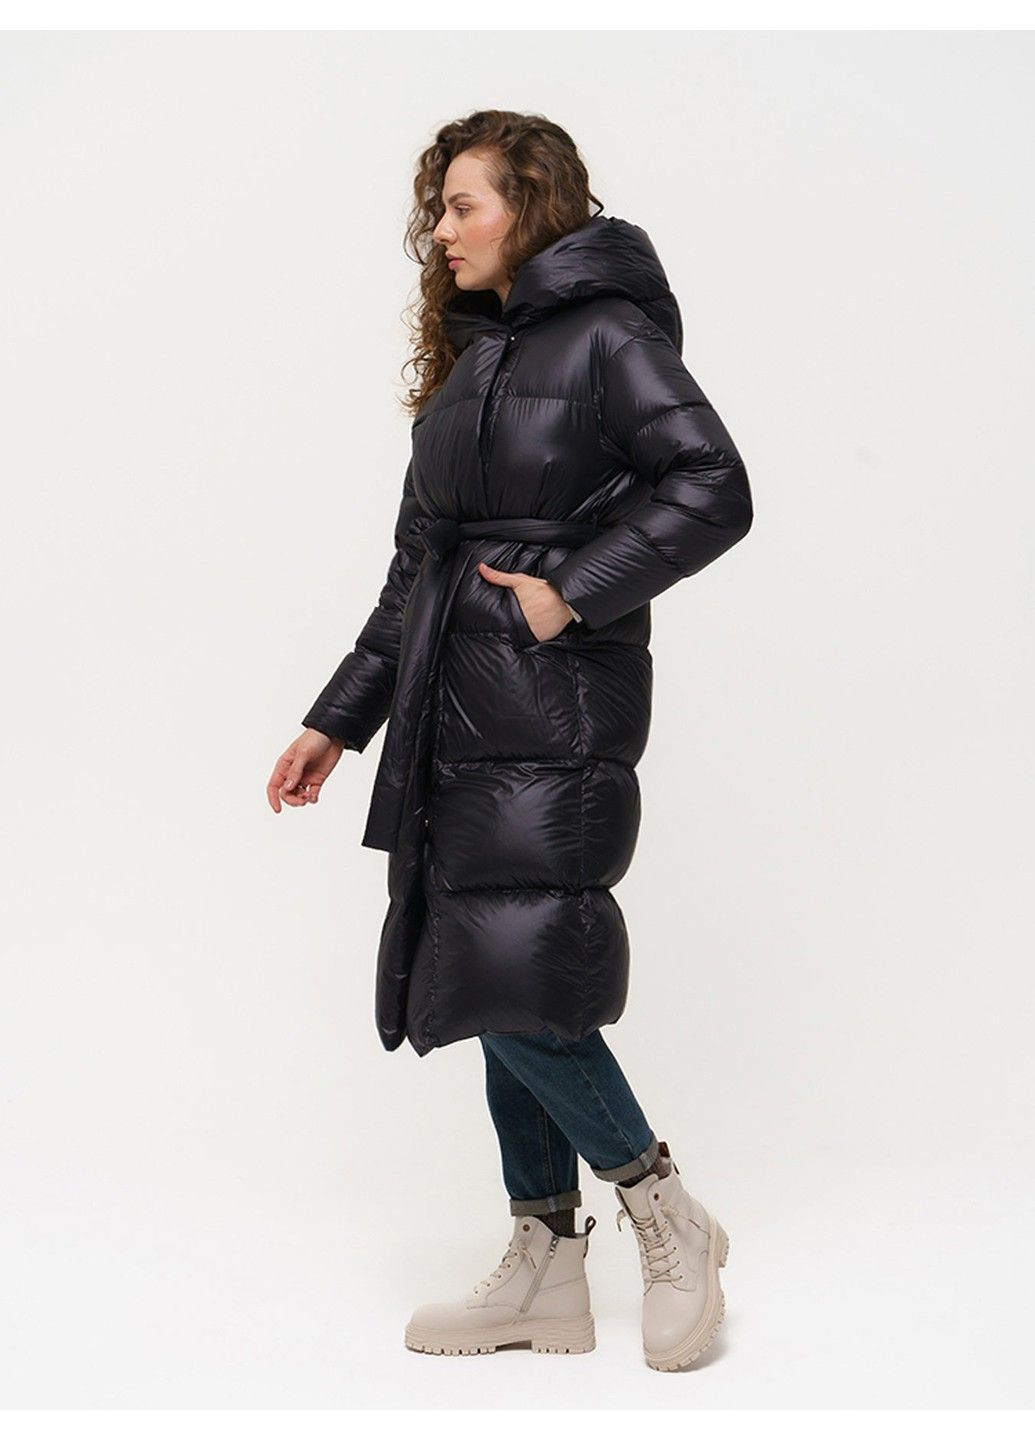 Чорна зимня пальто 21 - 18120 Vivilona